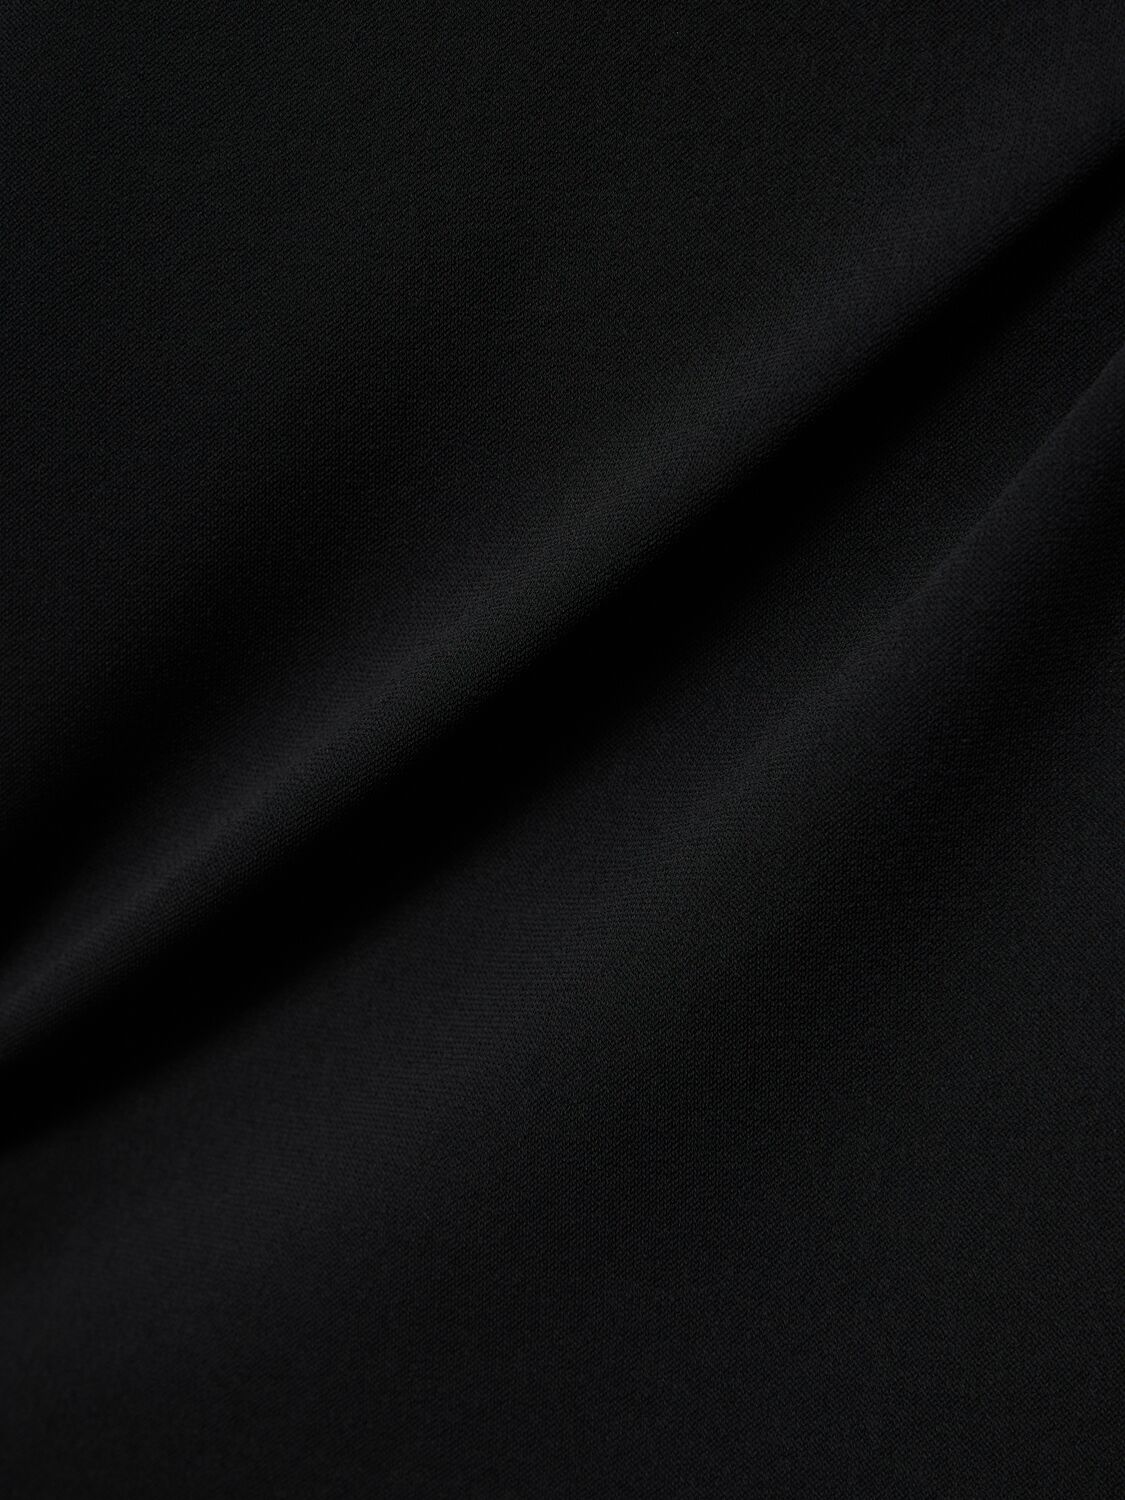 Shop Ann Demeulemeester Aura Strapless Jersey Long Dress In Black